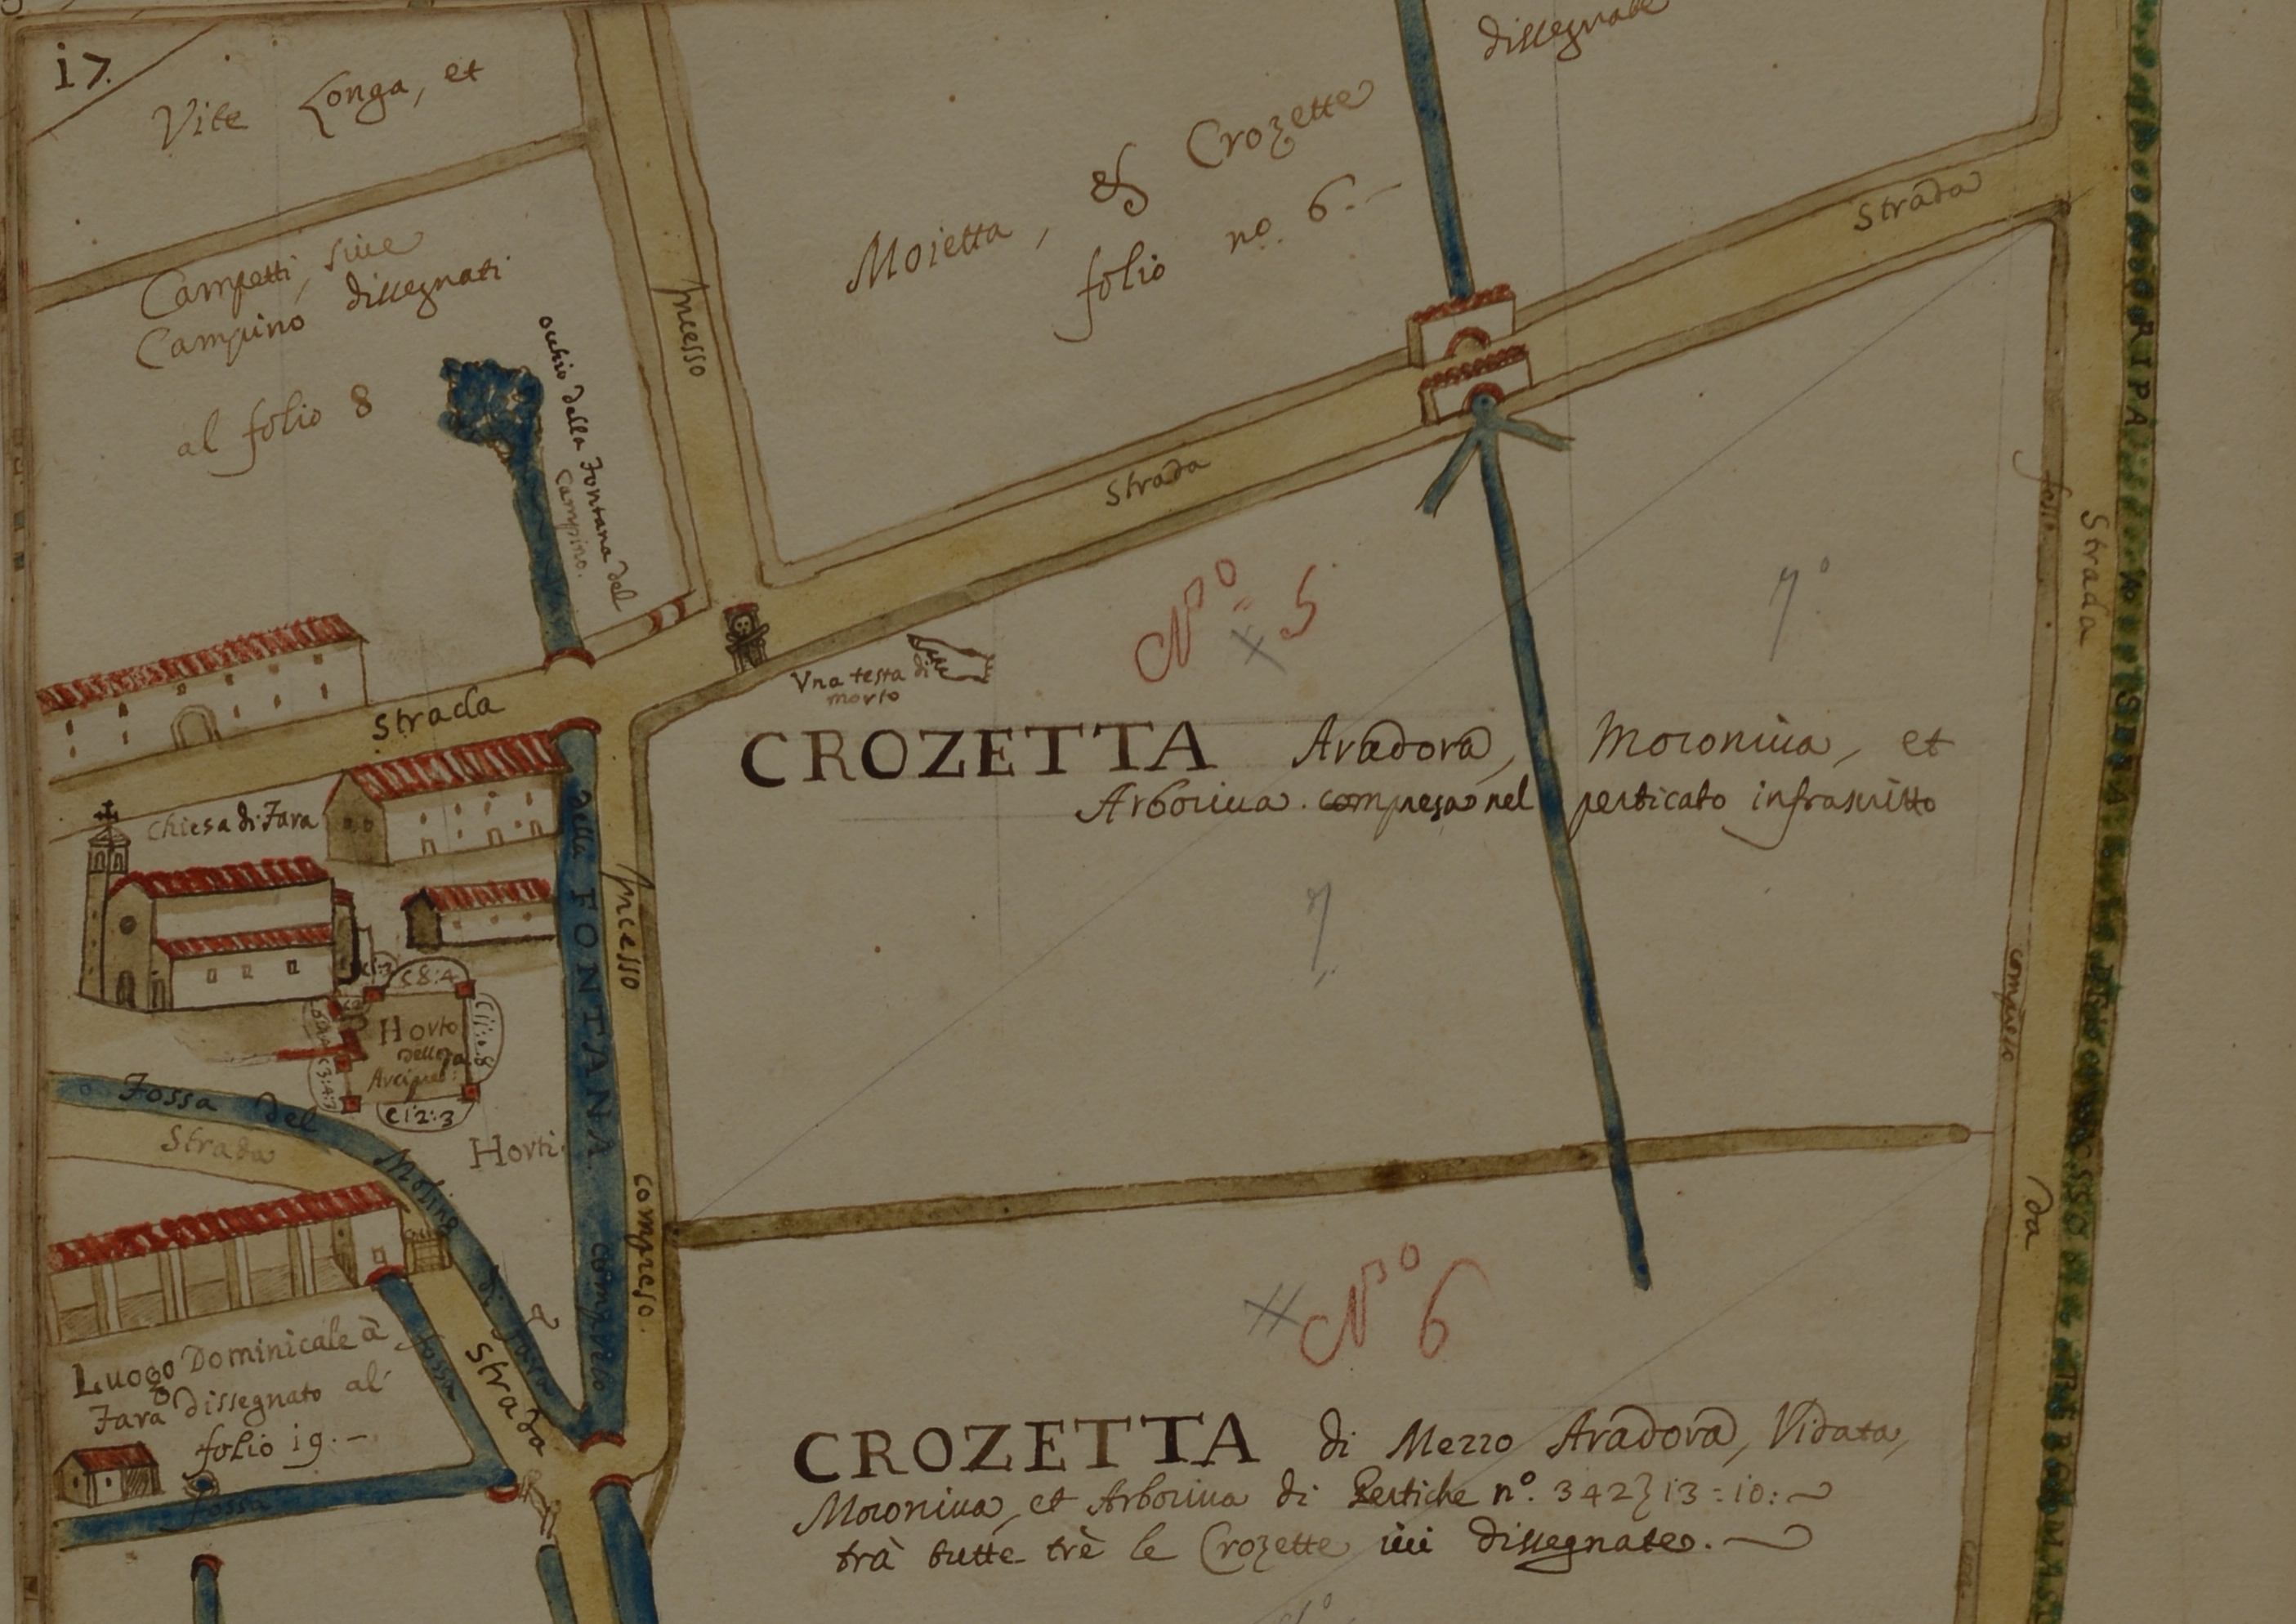 Cabreo di Fara Olivana, Crozetta, Archivio Fondazione Mia, n. 447, anno 1721, tav. 17